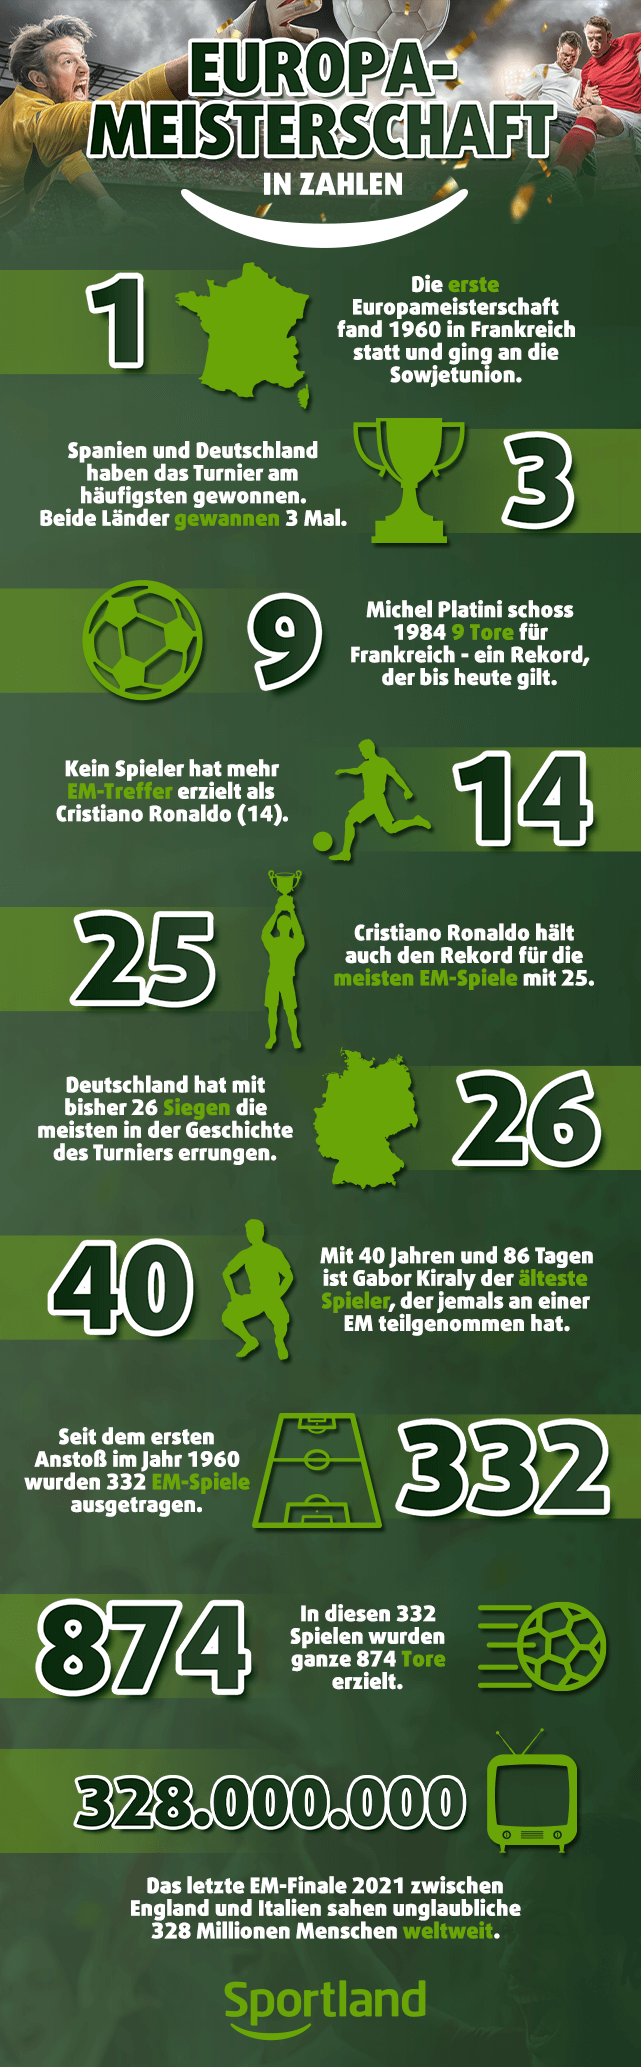 Eine Infografik mit einigen Fakten über die Europameisterschaften.